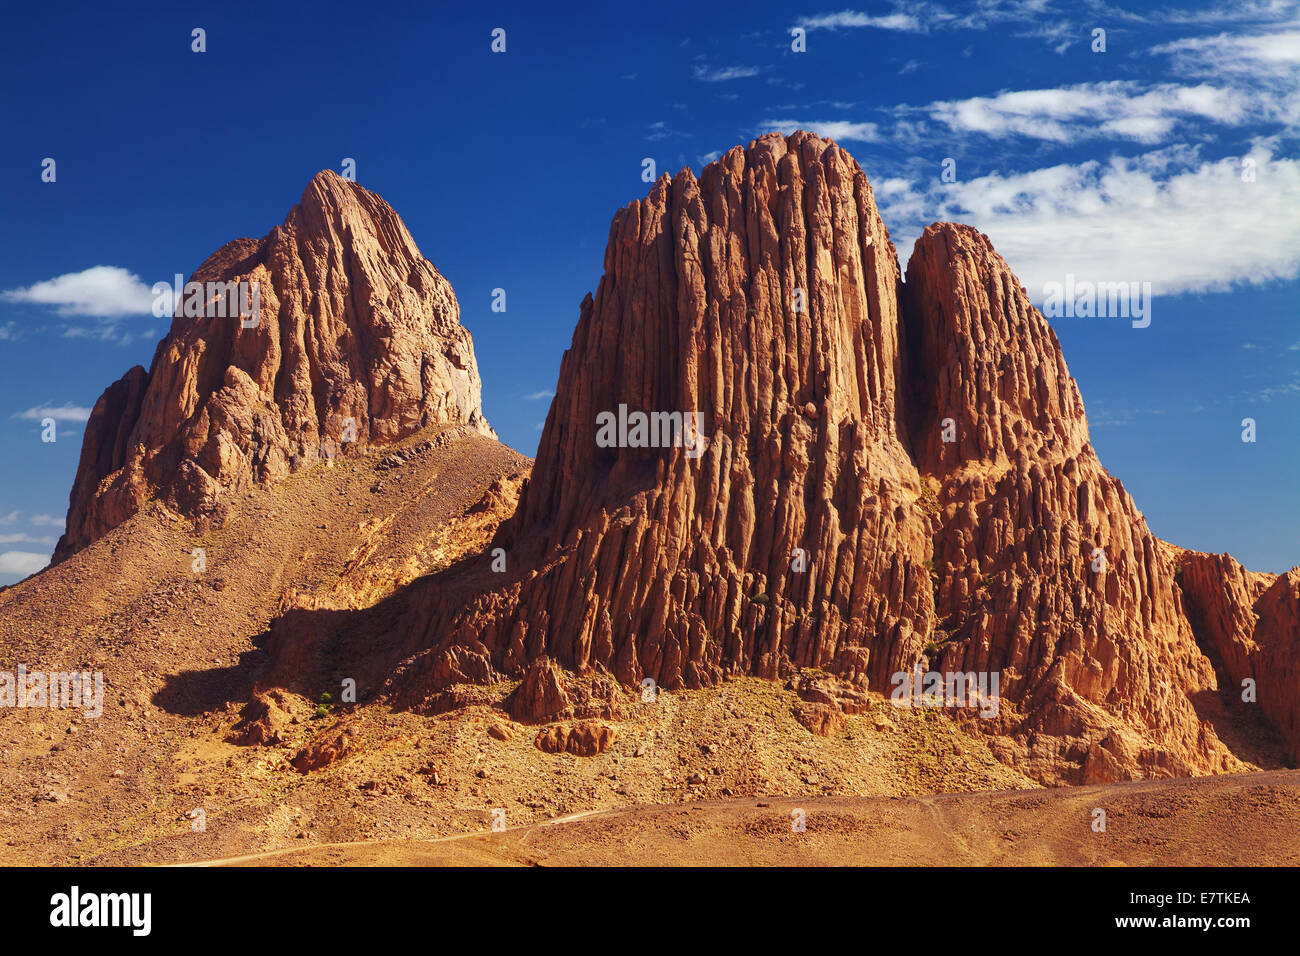 Rocks in Sahara Desert, Hoggar mountains, Algeria Stock Photo